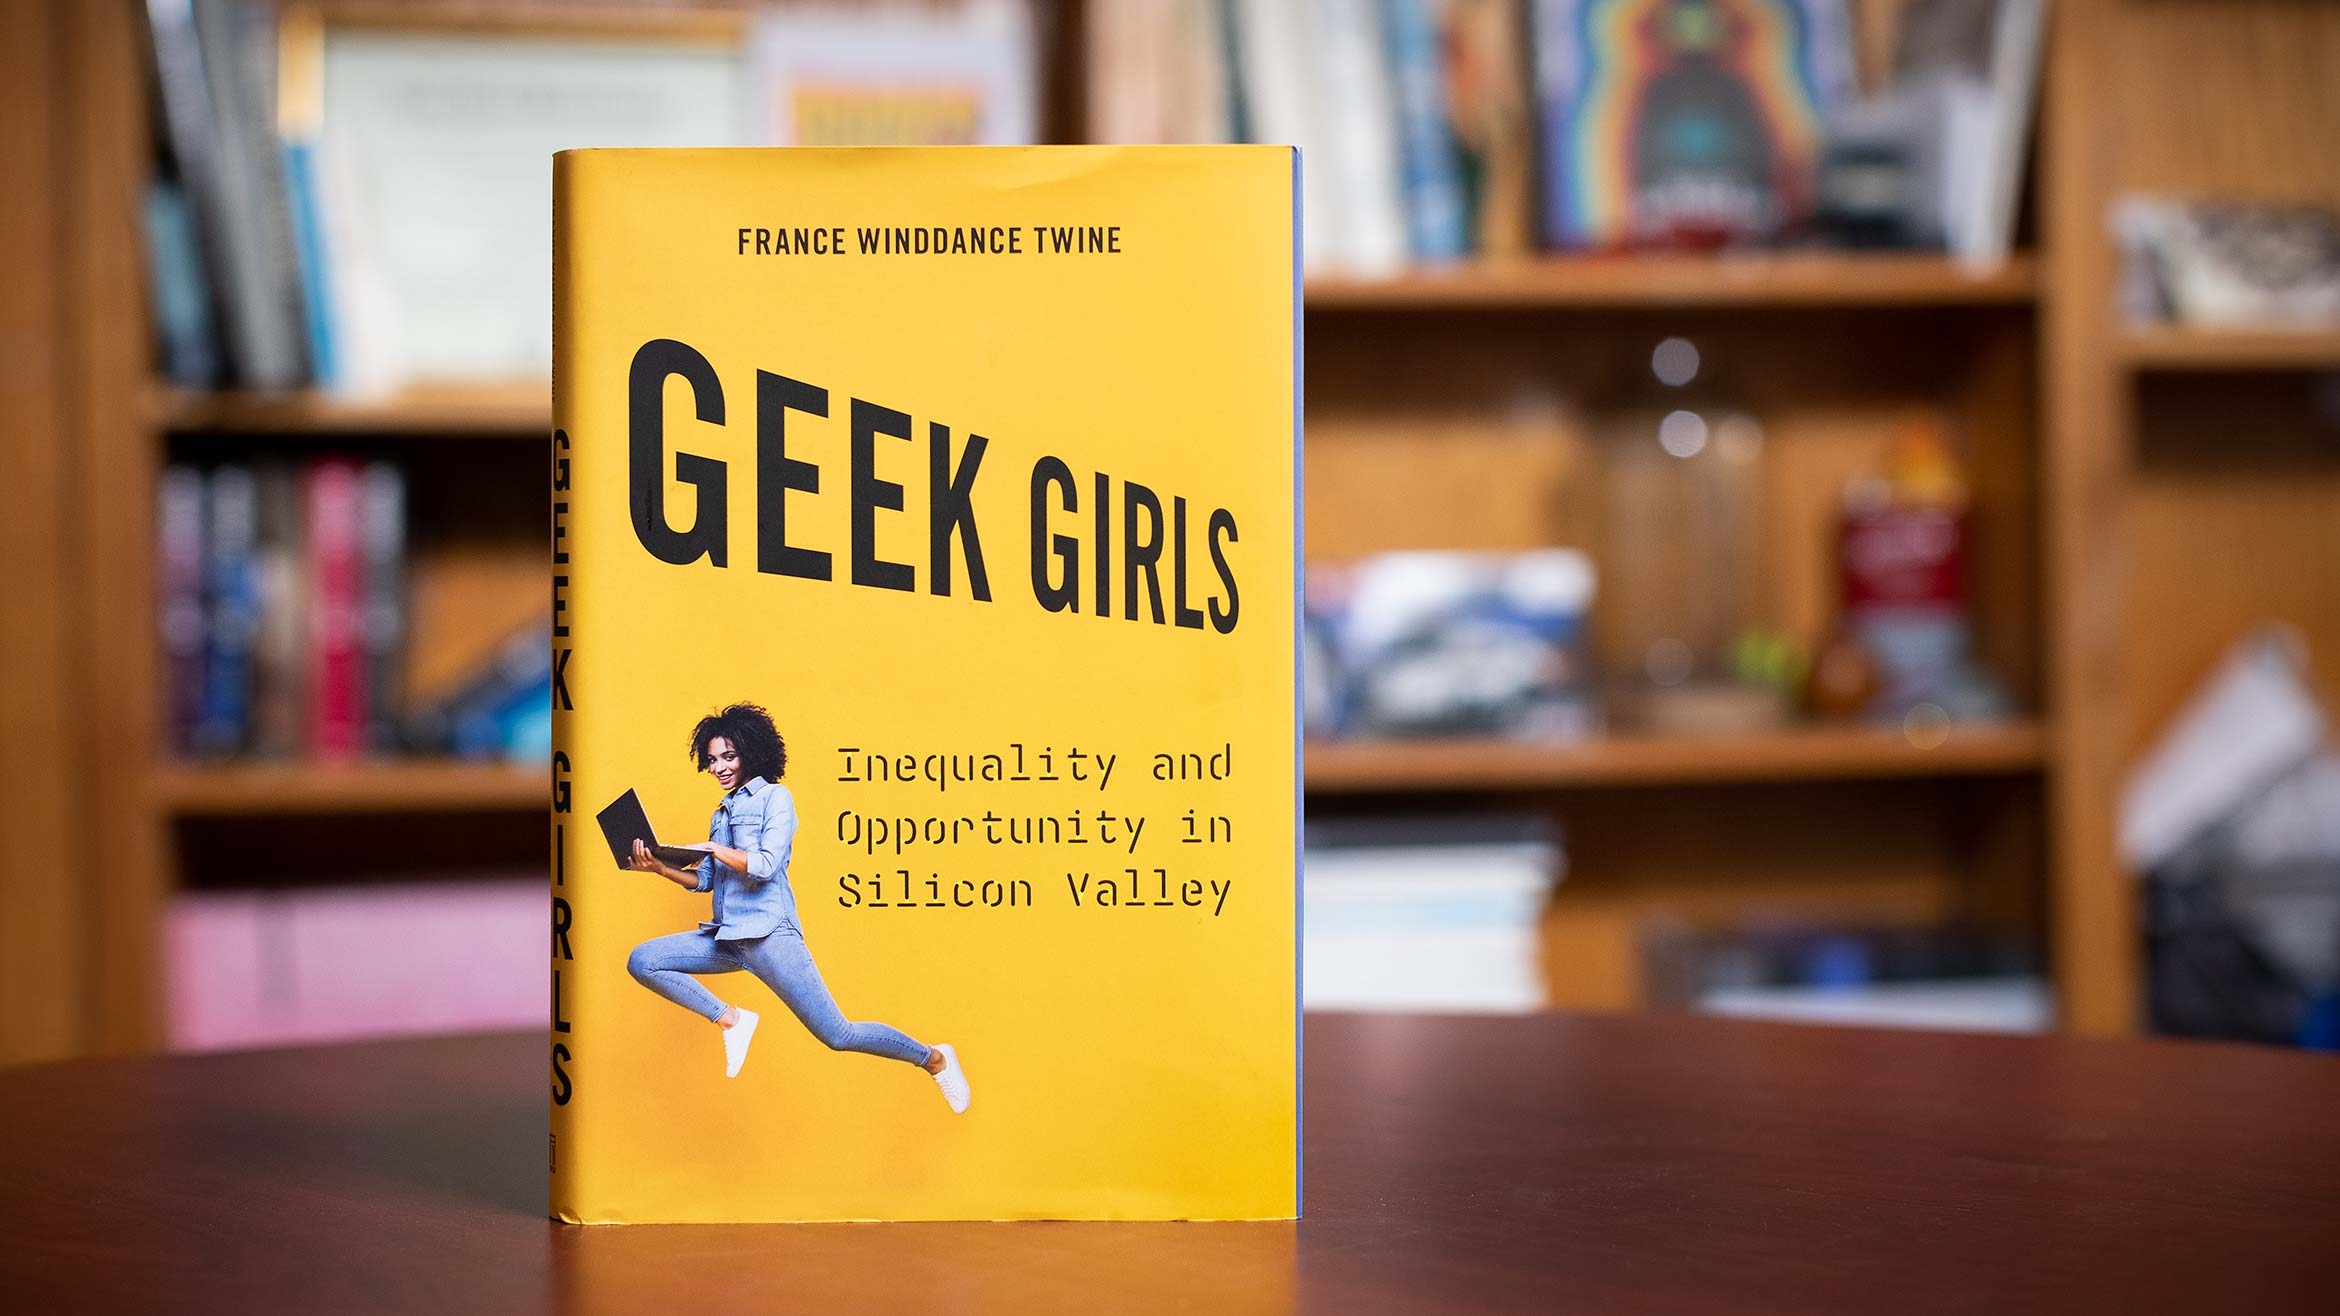 Geek Girls book by Professor WInddance Twine